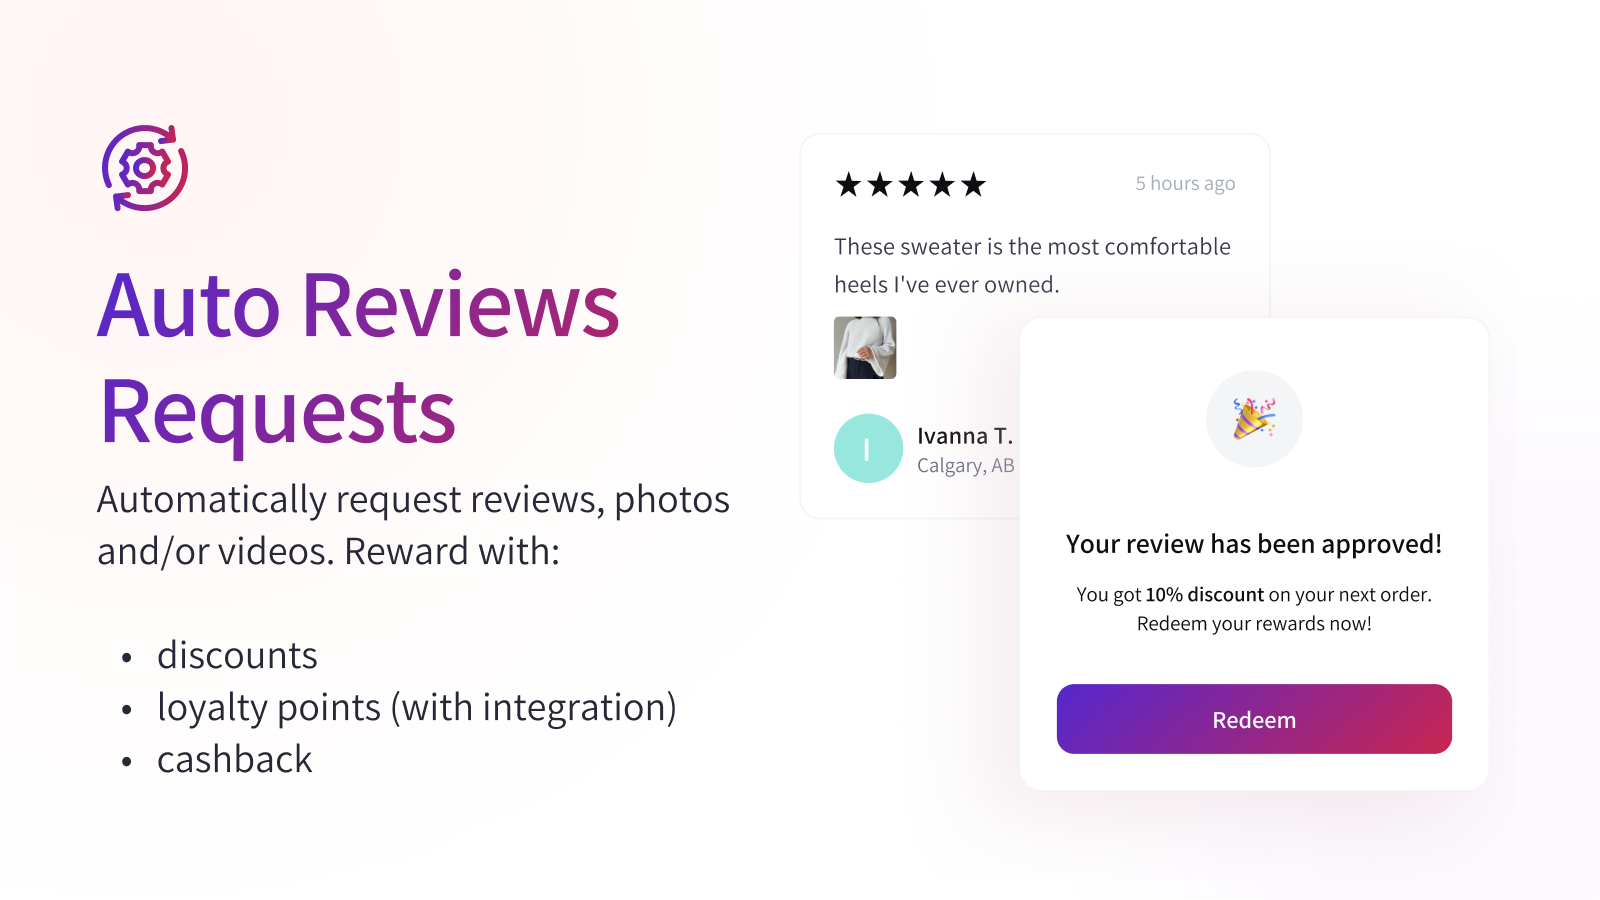 Automatically request reviews, photos & videos + attach rewards.